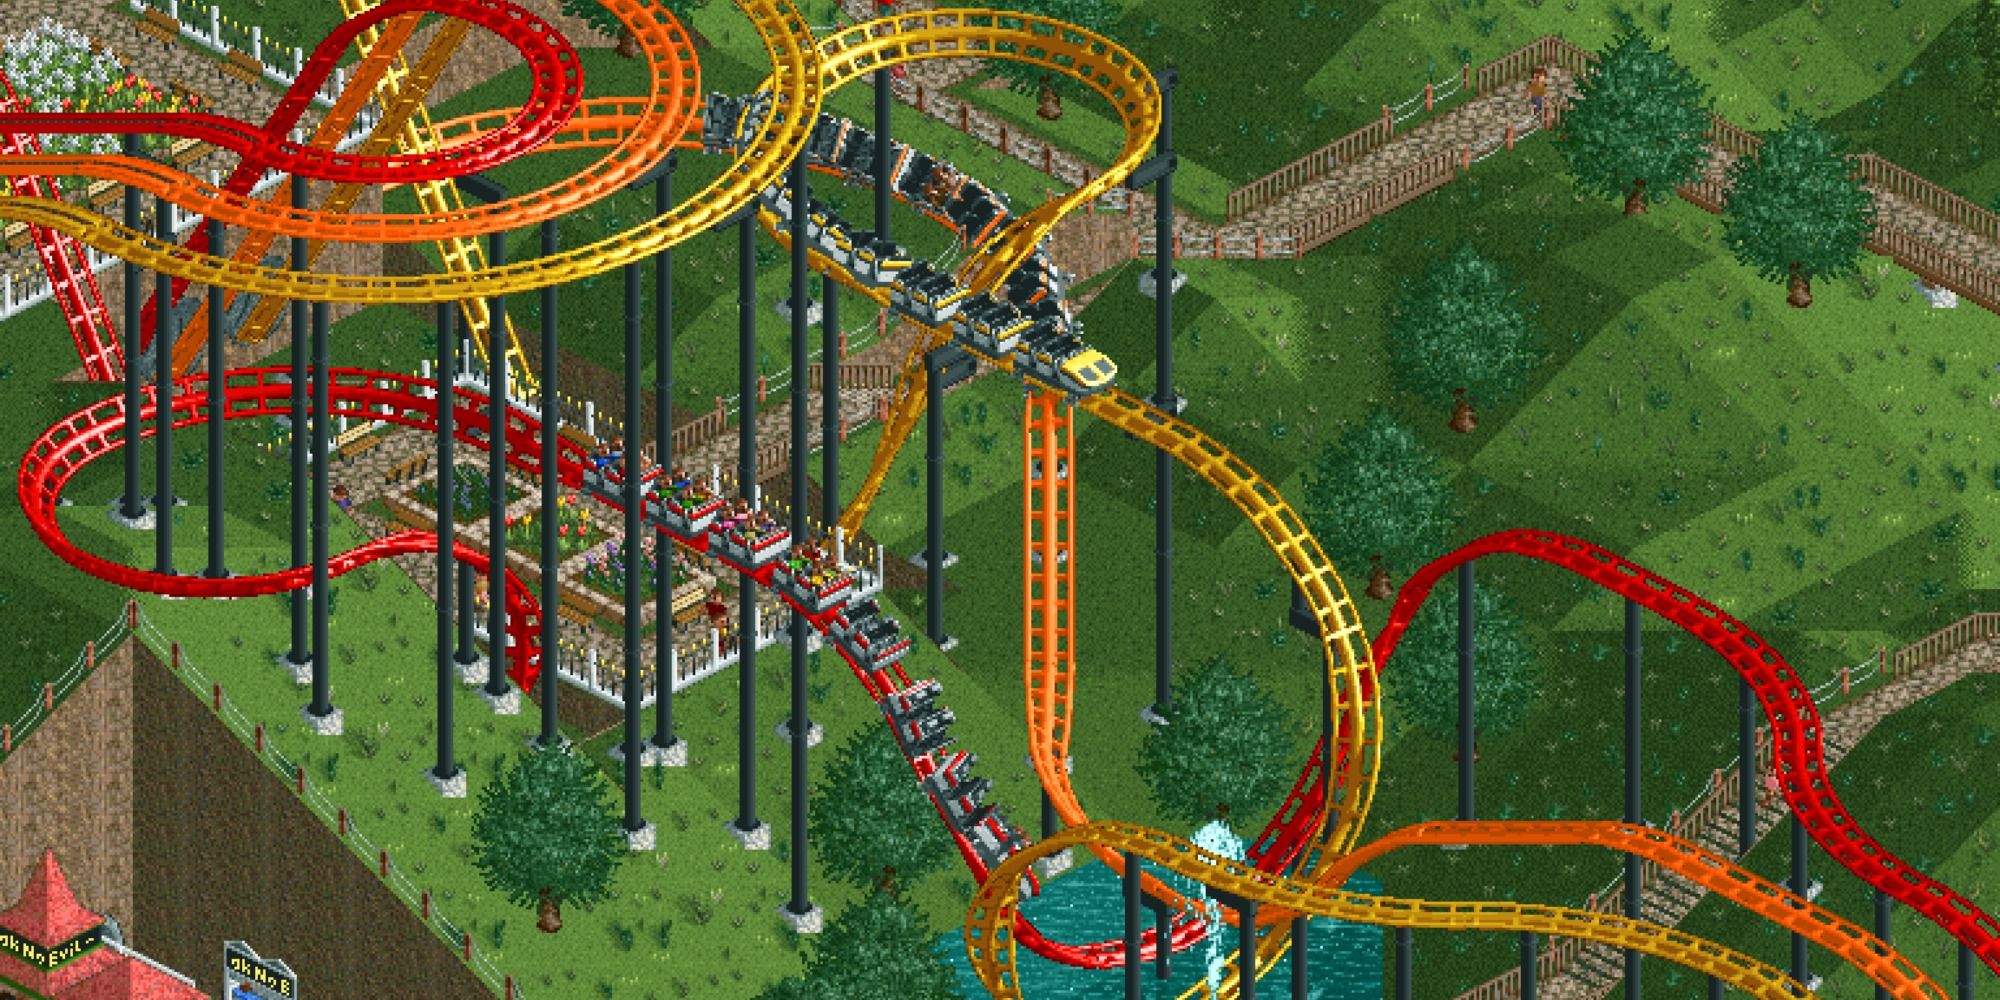 Roller Coaster Tycoon Steel Looping dueling coasters